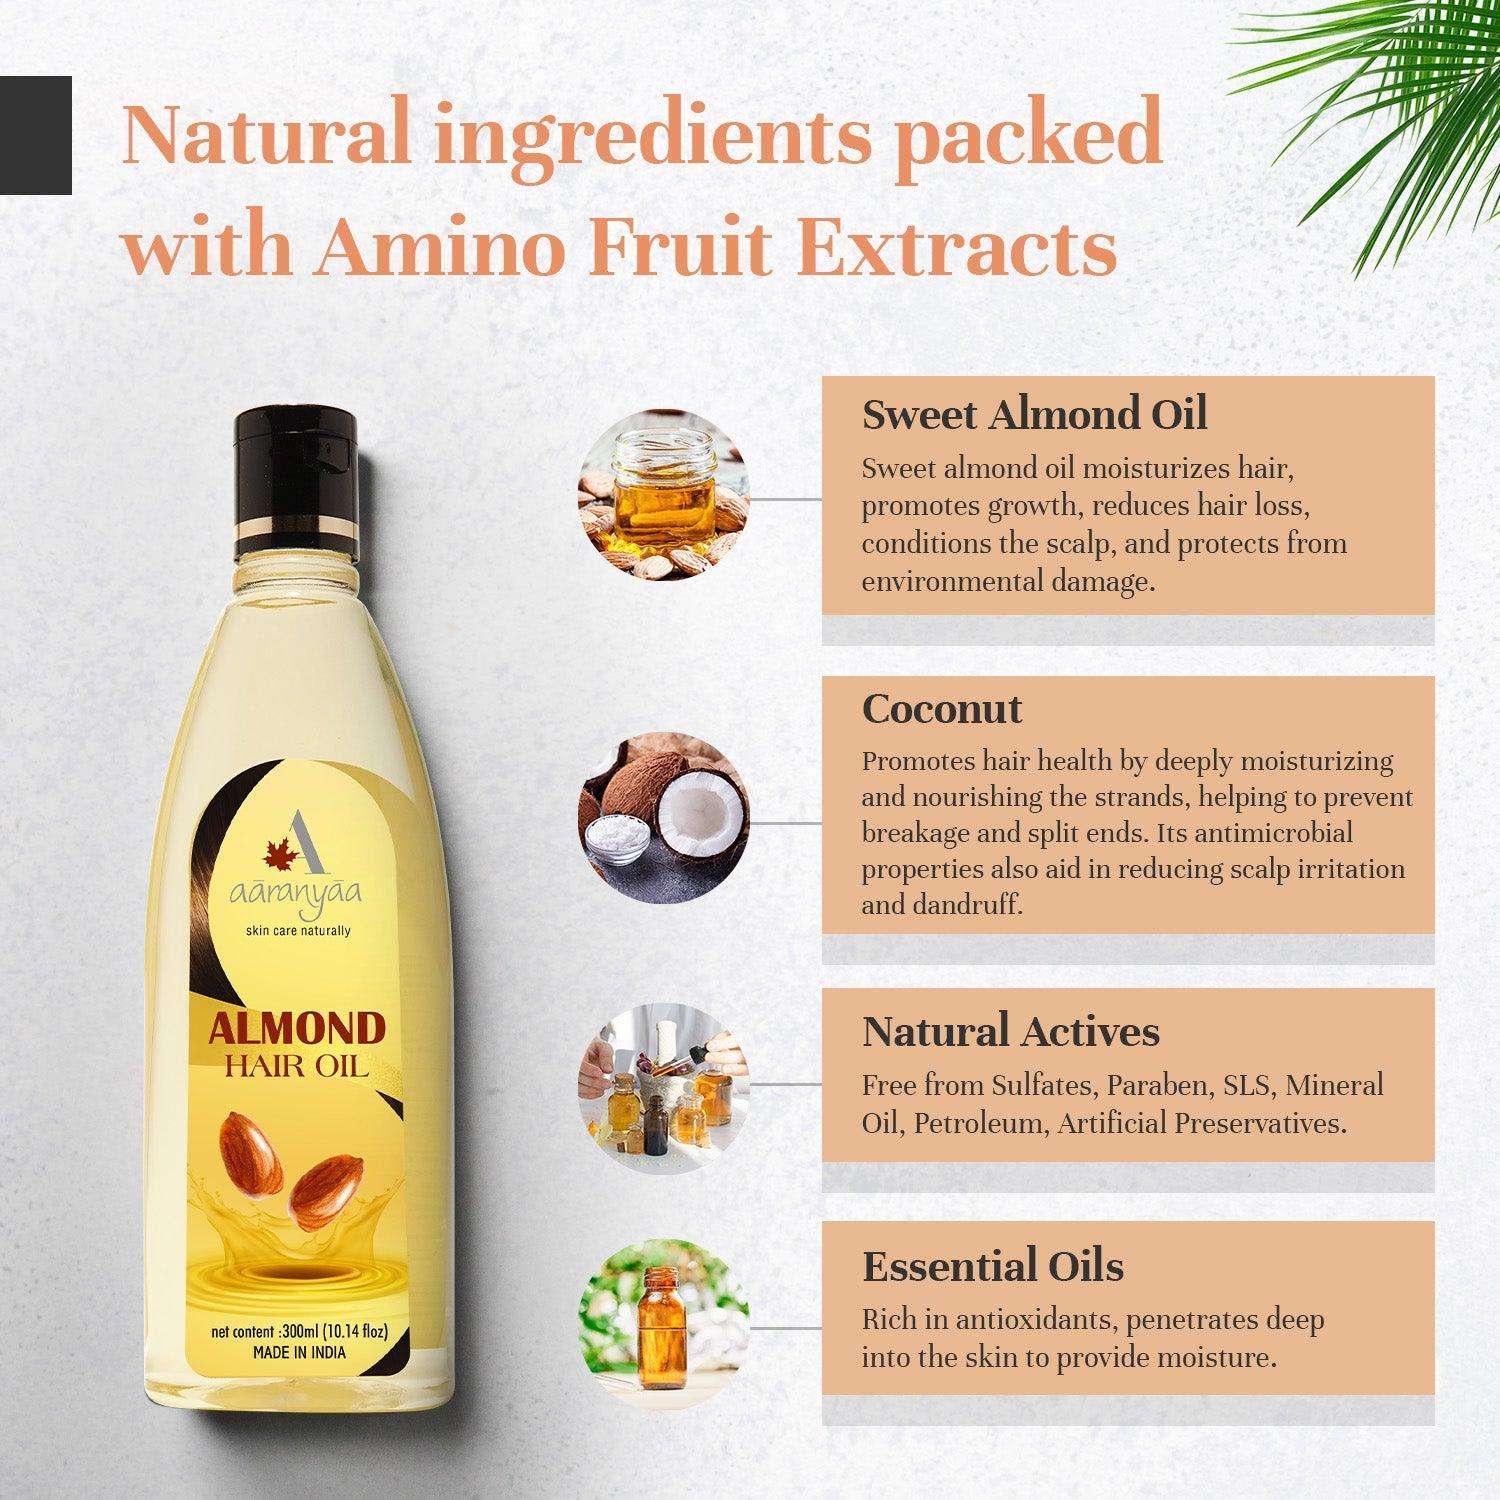 Almond Hair Oil - aaranyaa skincare